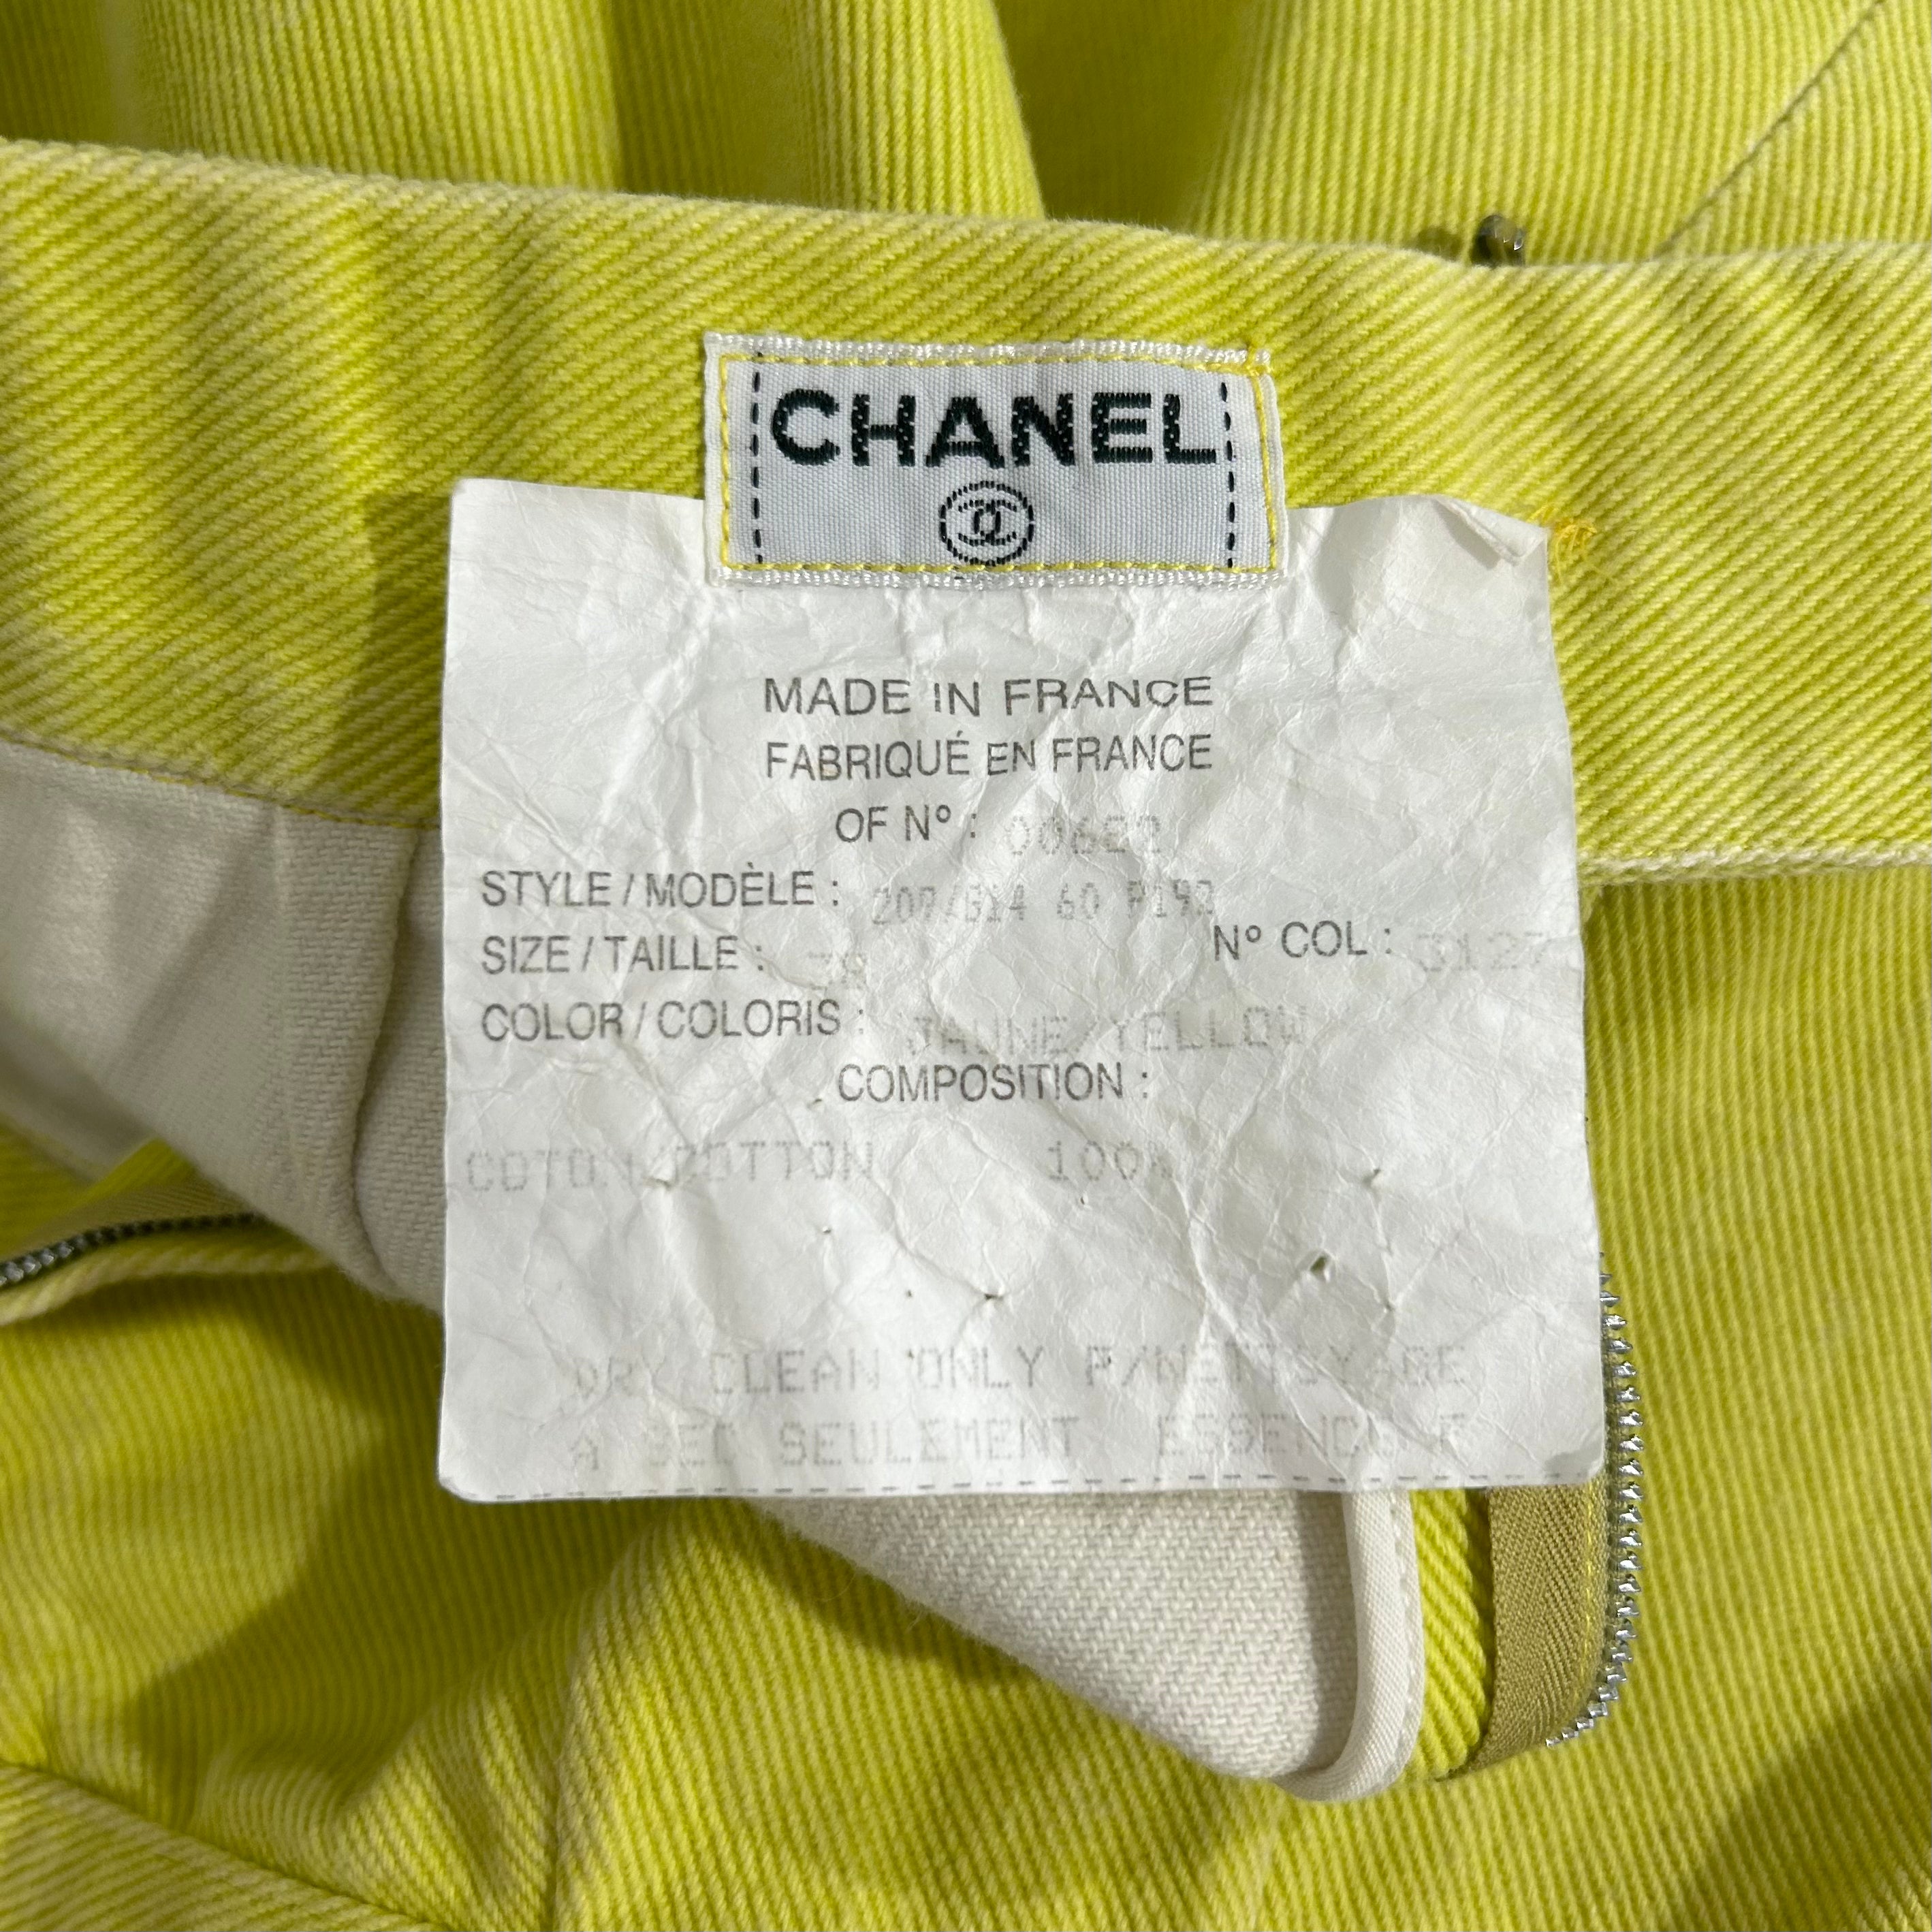 Chanel Vintage Lime Denim Skirt